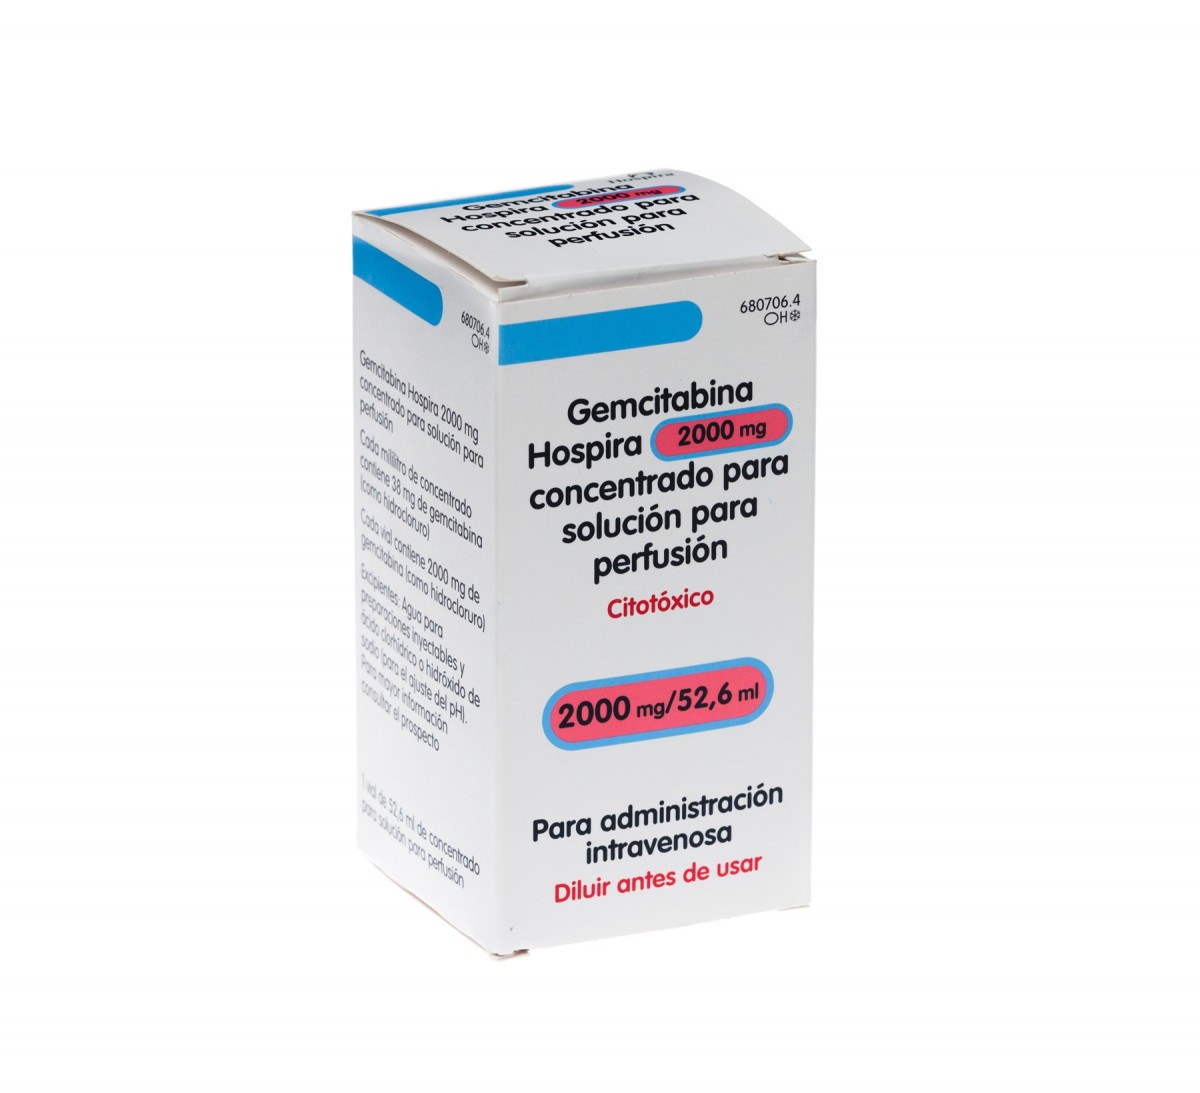 GEMCITABINA HOSPIRA 2000 mg CONCENTRADO PARA SOLUCION PARA PERFUSION , 1 vial de 52,6 ml fotografía del envase.